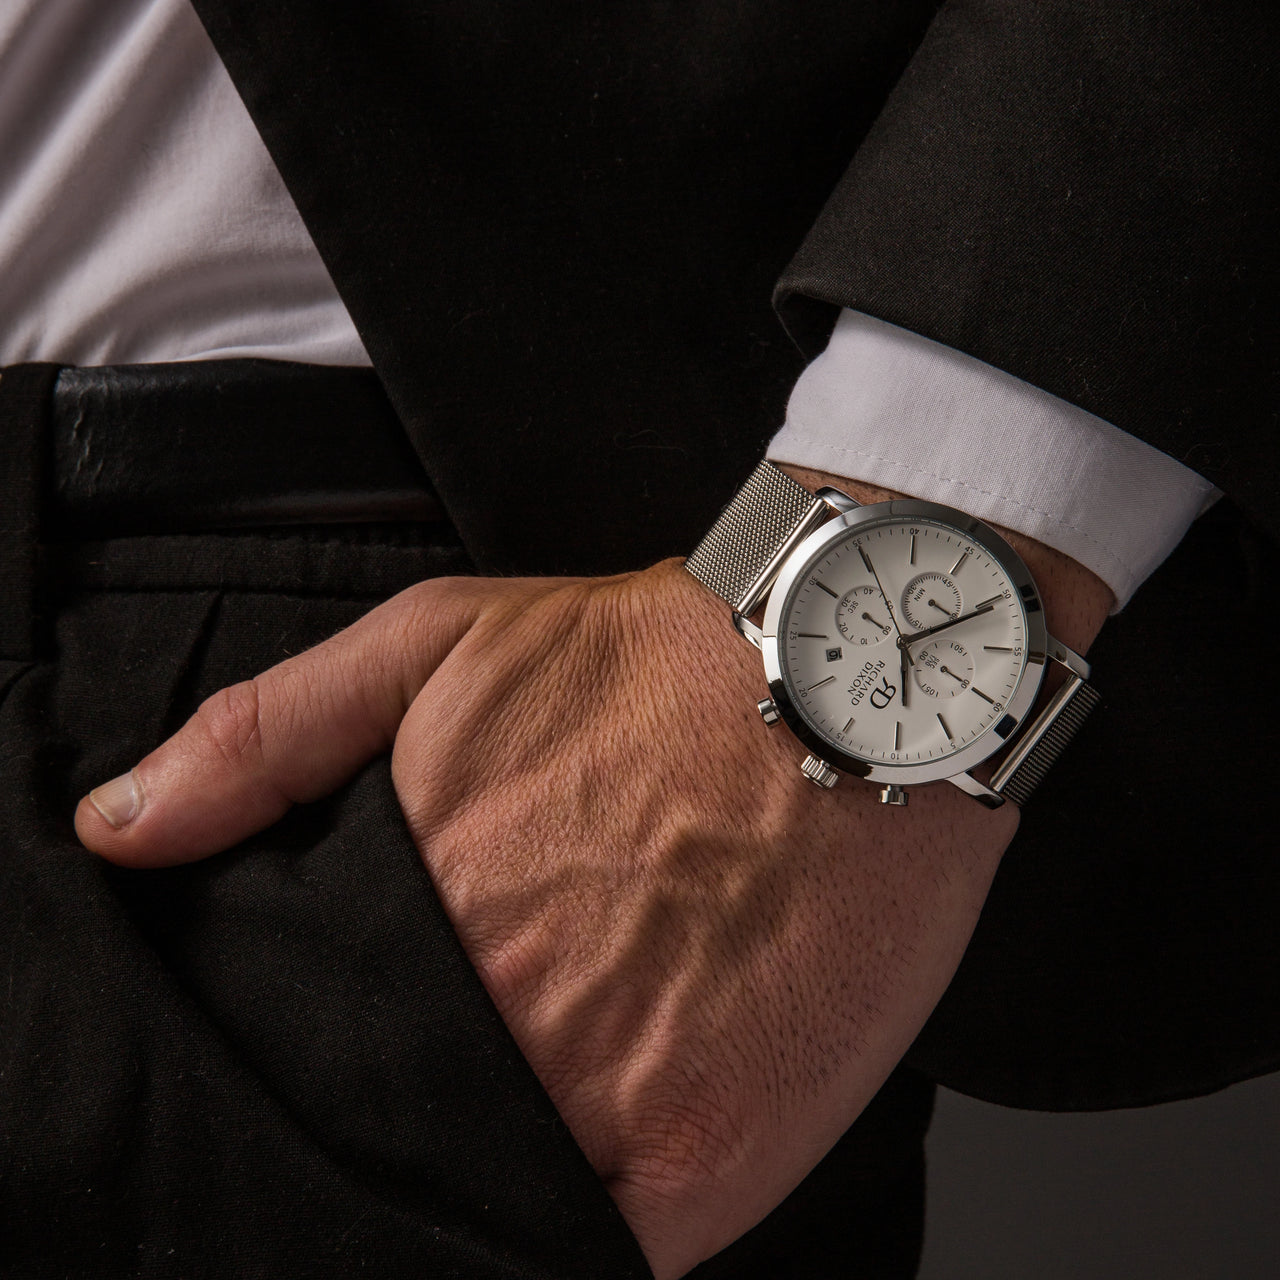 Relógio de Homem Richard Dixon Iconic Chrono Mesh Silver White no Pulso com Mão no Bolso